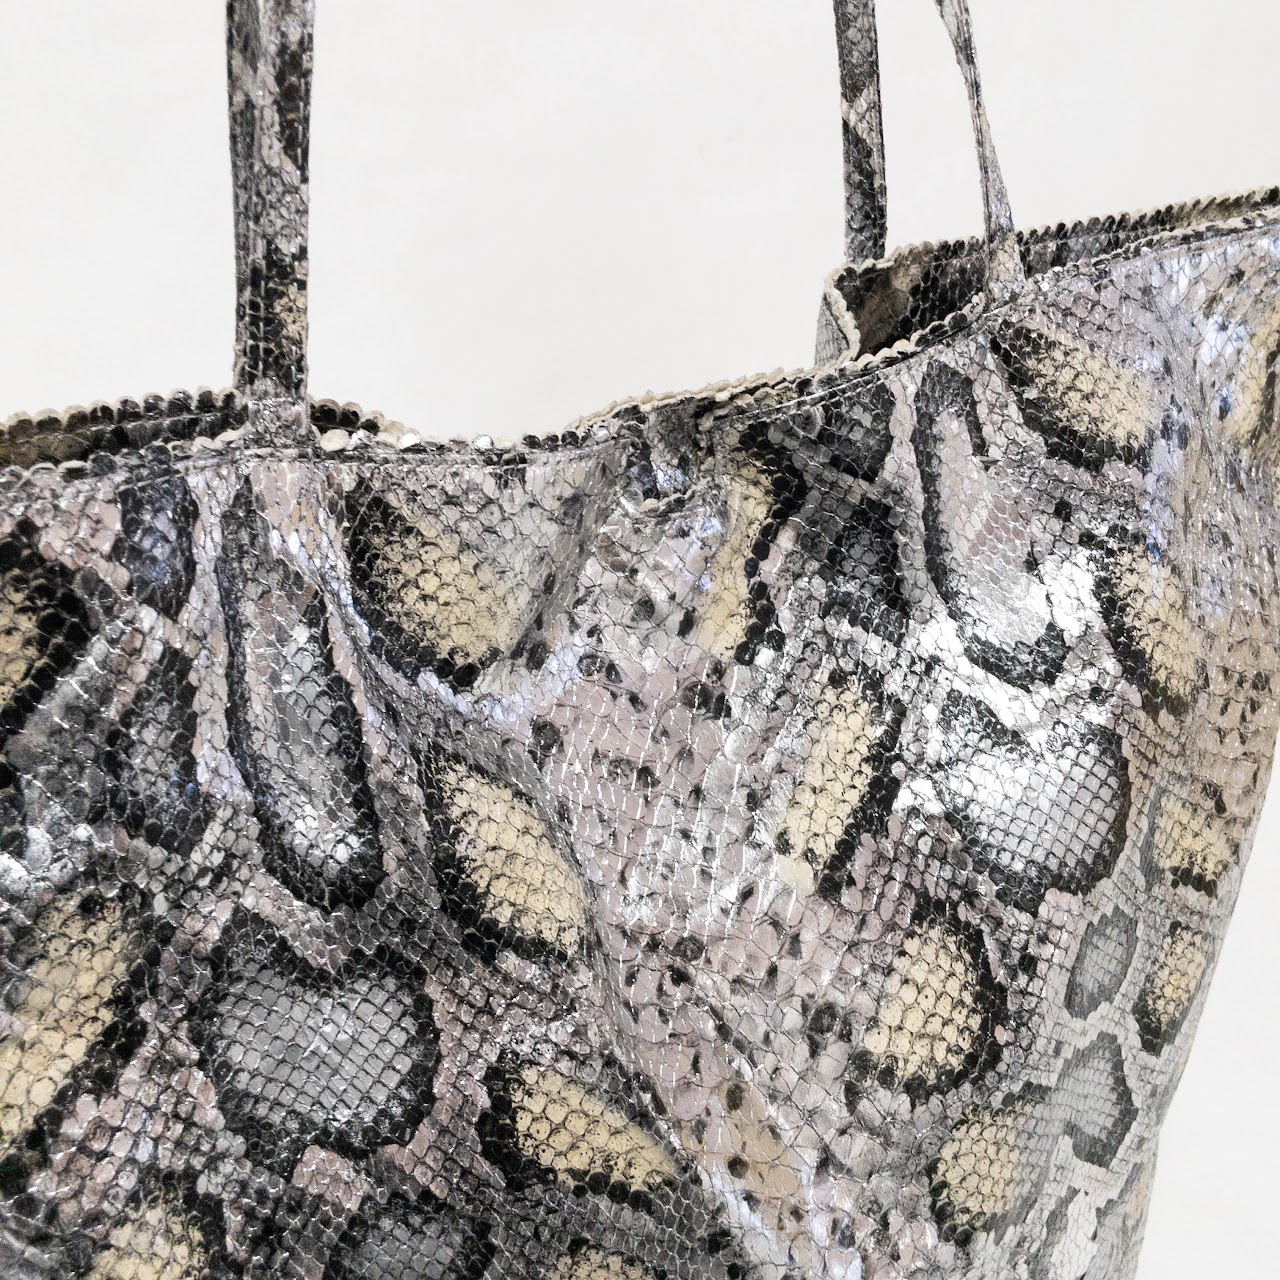 Fatto A Mano by Carlos Falchi Women's Snakeskin Tote Bag